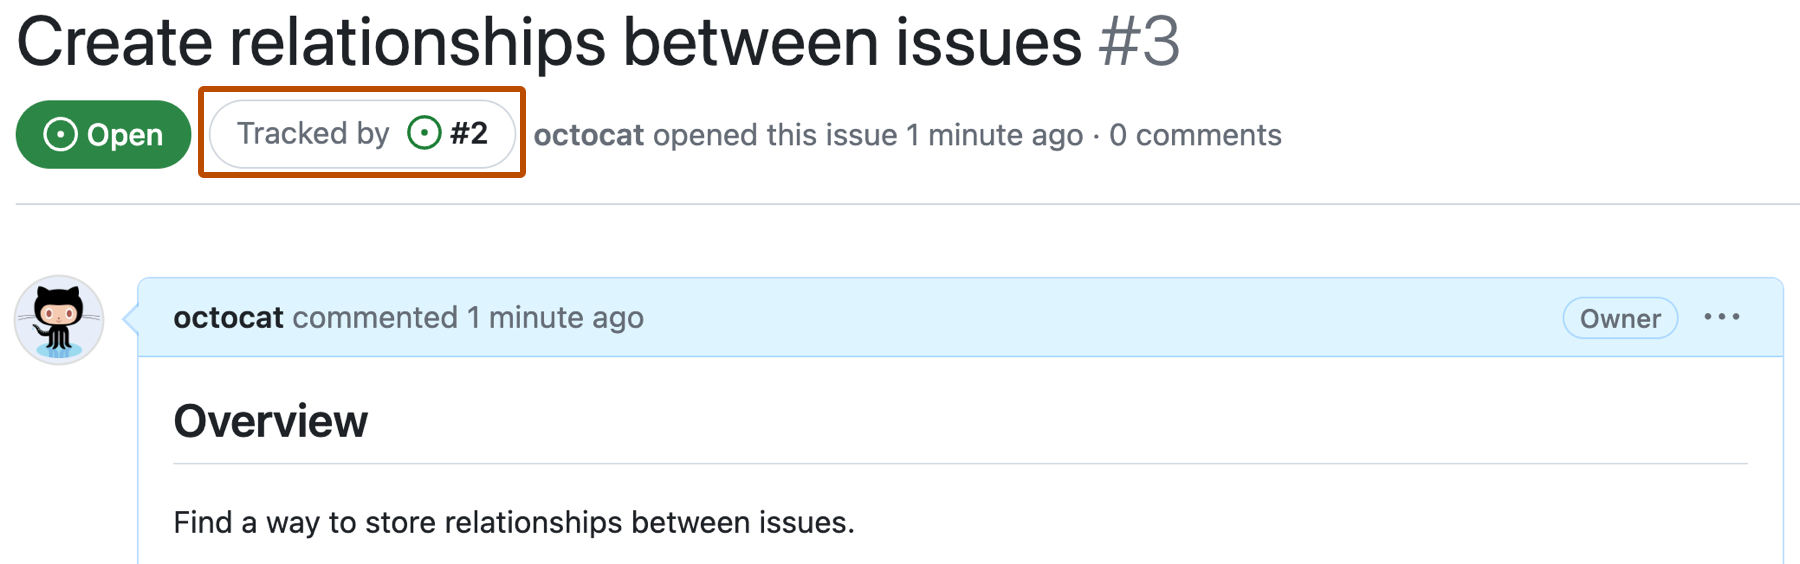 Снимок экрана: проблема GitHub с именем "Создание связей между проблемами" и нумерованной проблемой 3. Кнопка под заголовком проблемы с надписью "Отслеживается по проблеме 2", выделена темно-оранжевым цветом.